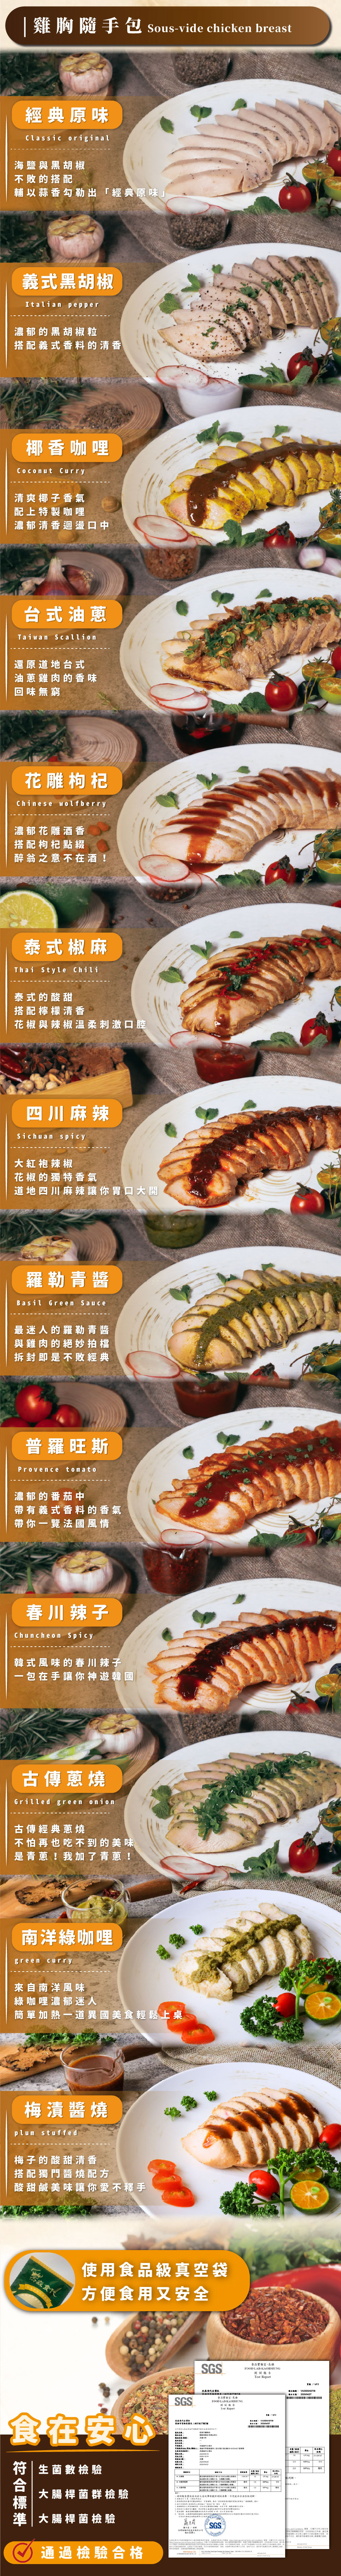 【杰森食代】舒肥雞胸肉/蔬菜均衡輕食餐 (雞胸肉100g+藜麥毛豆+蔬菜任選)